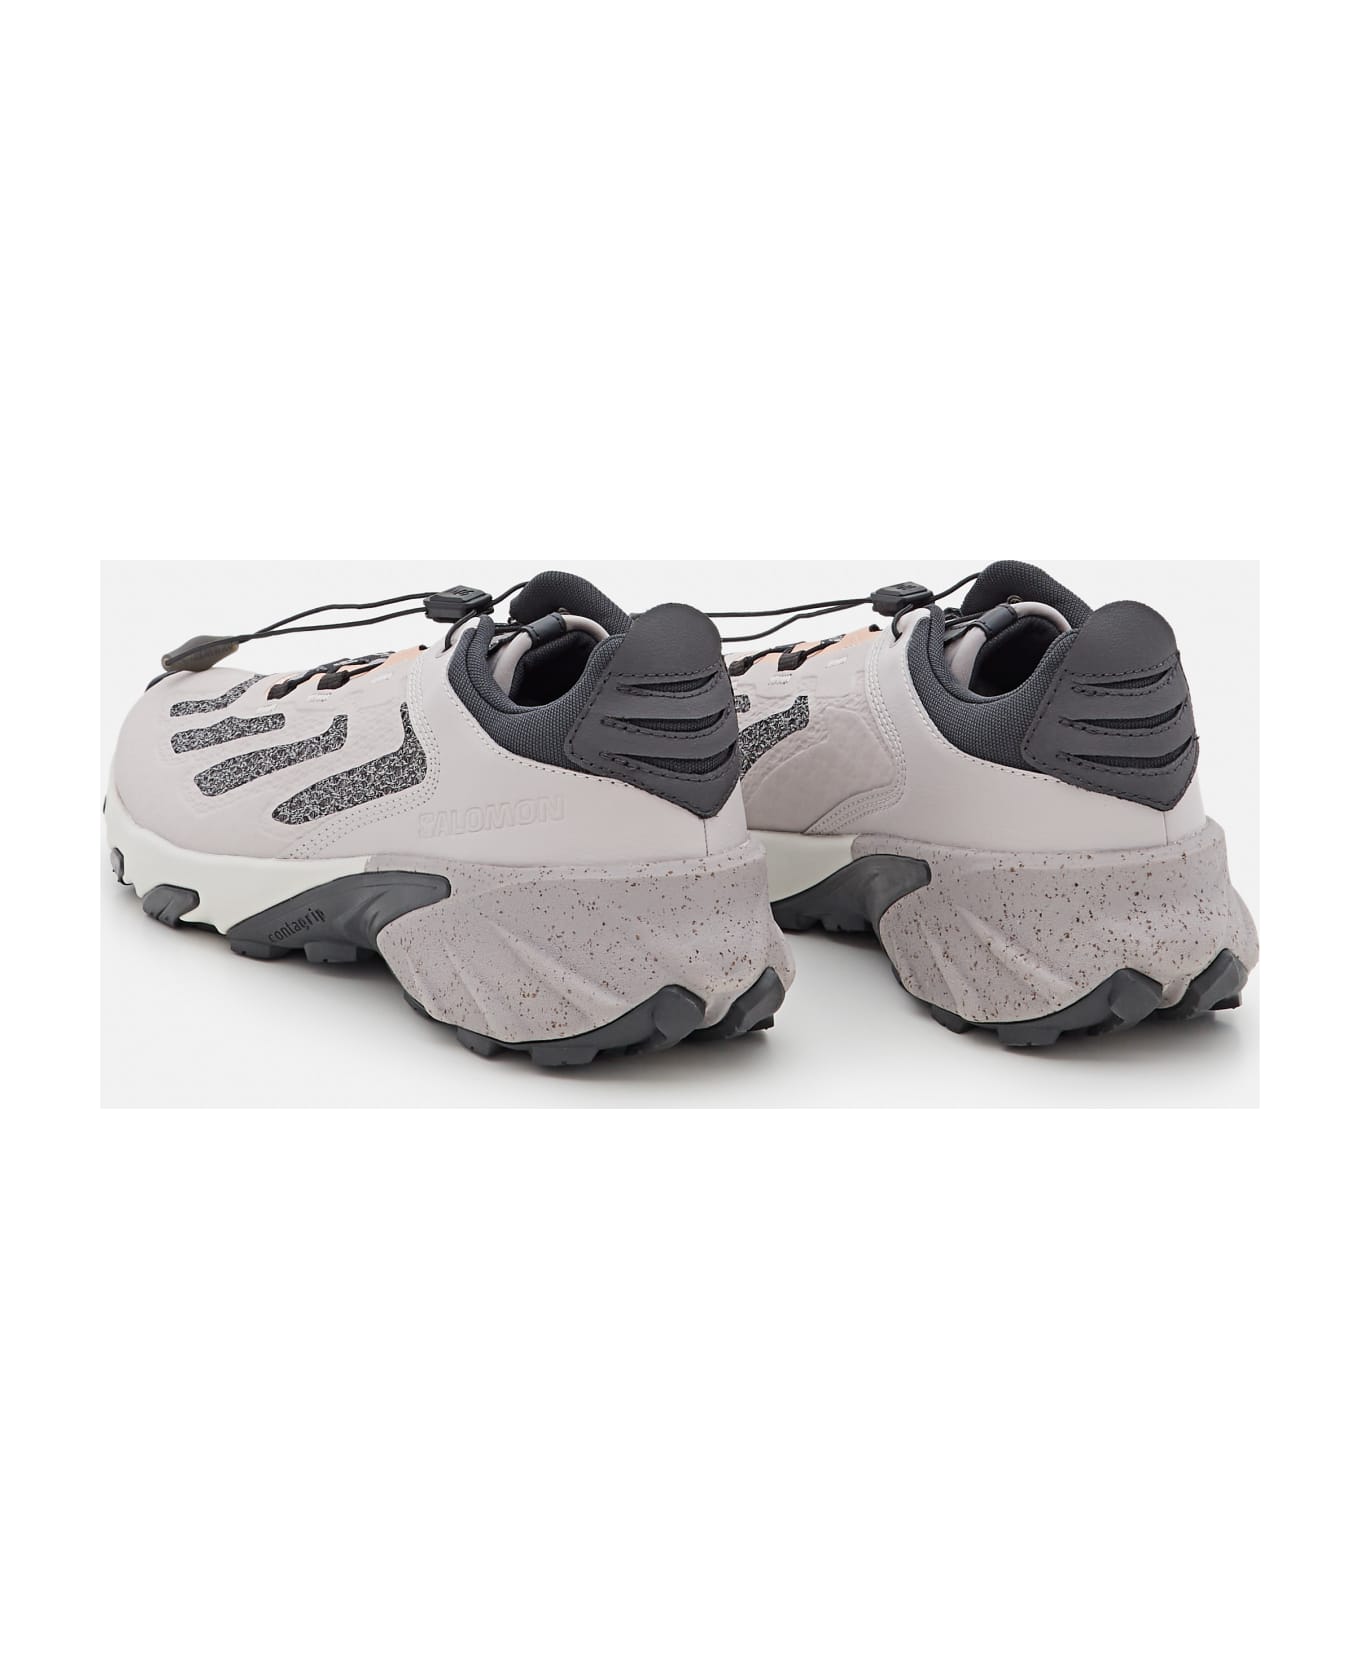 Salomon Speedverse Prg Sneakers - Grey